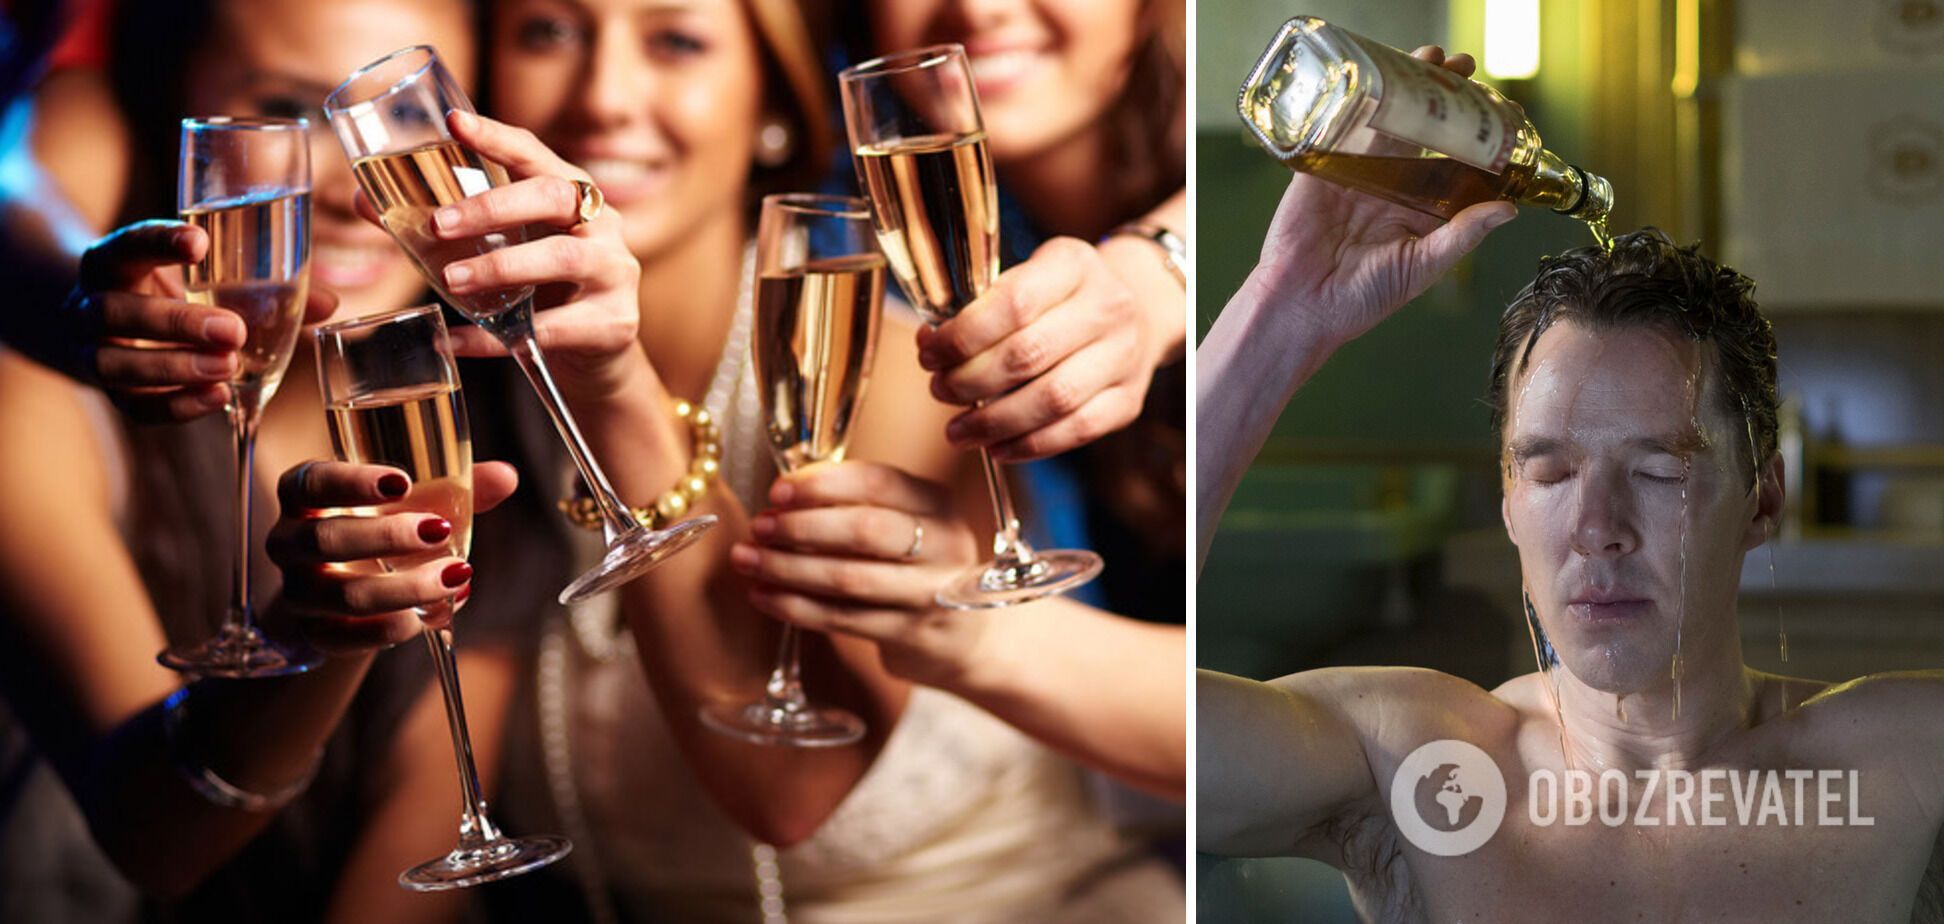 Употребление алкоголя вредит здоровью.